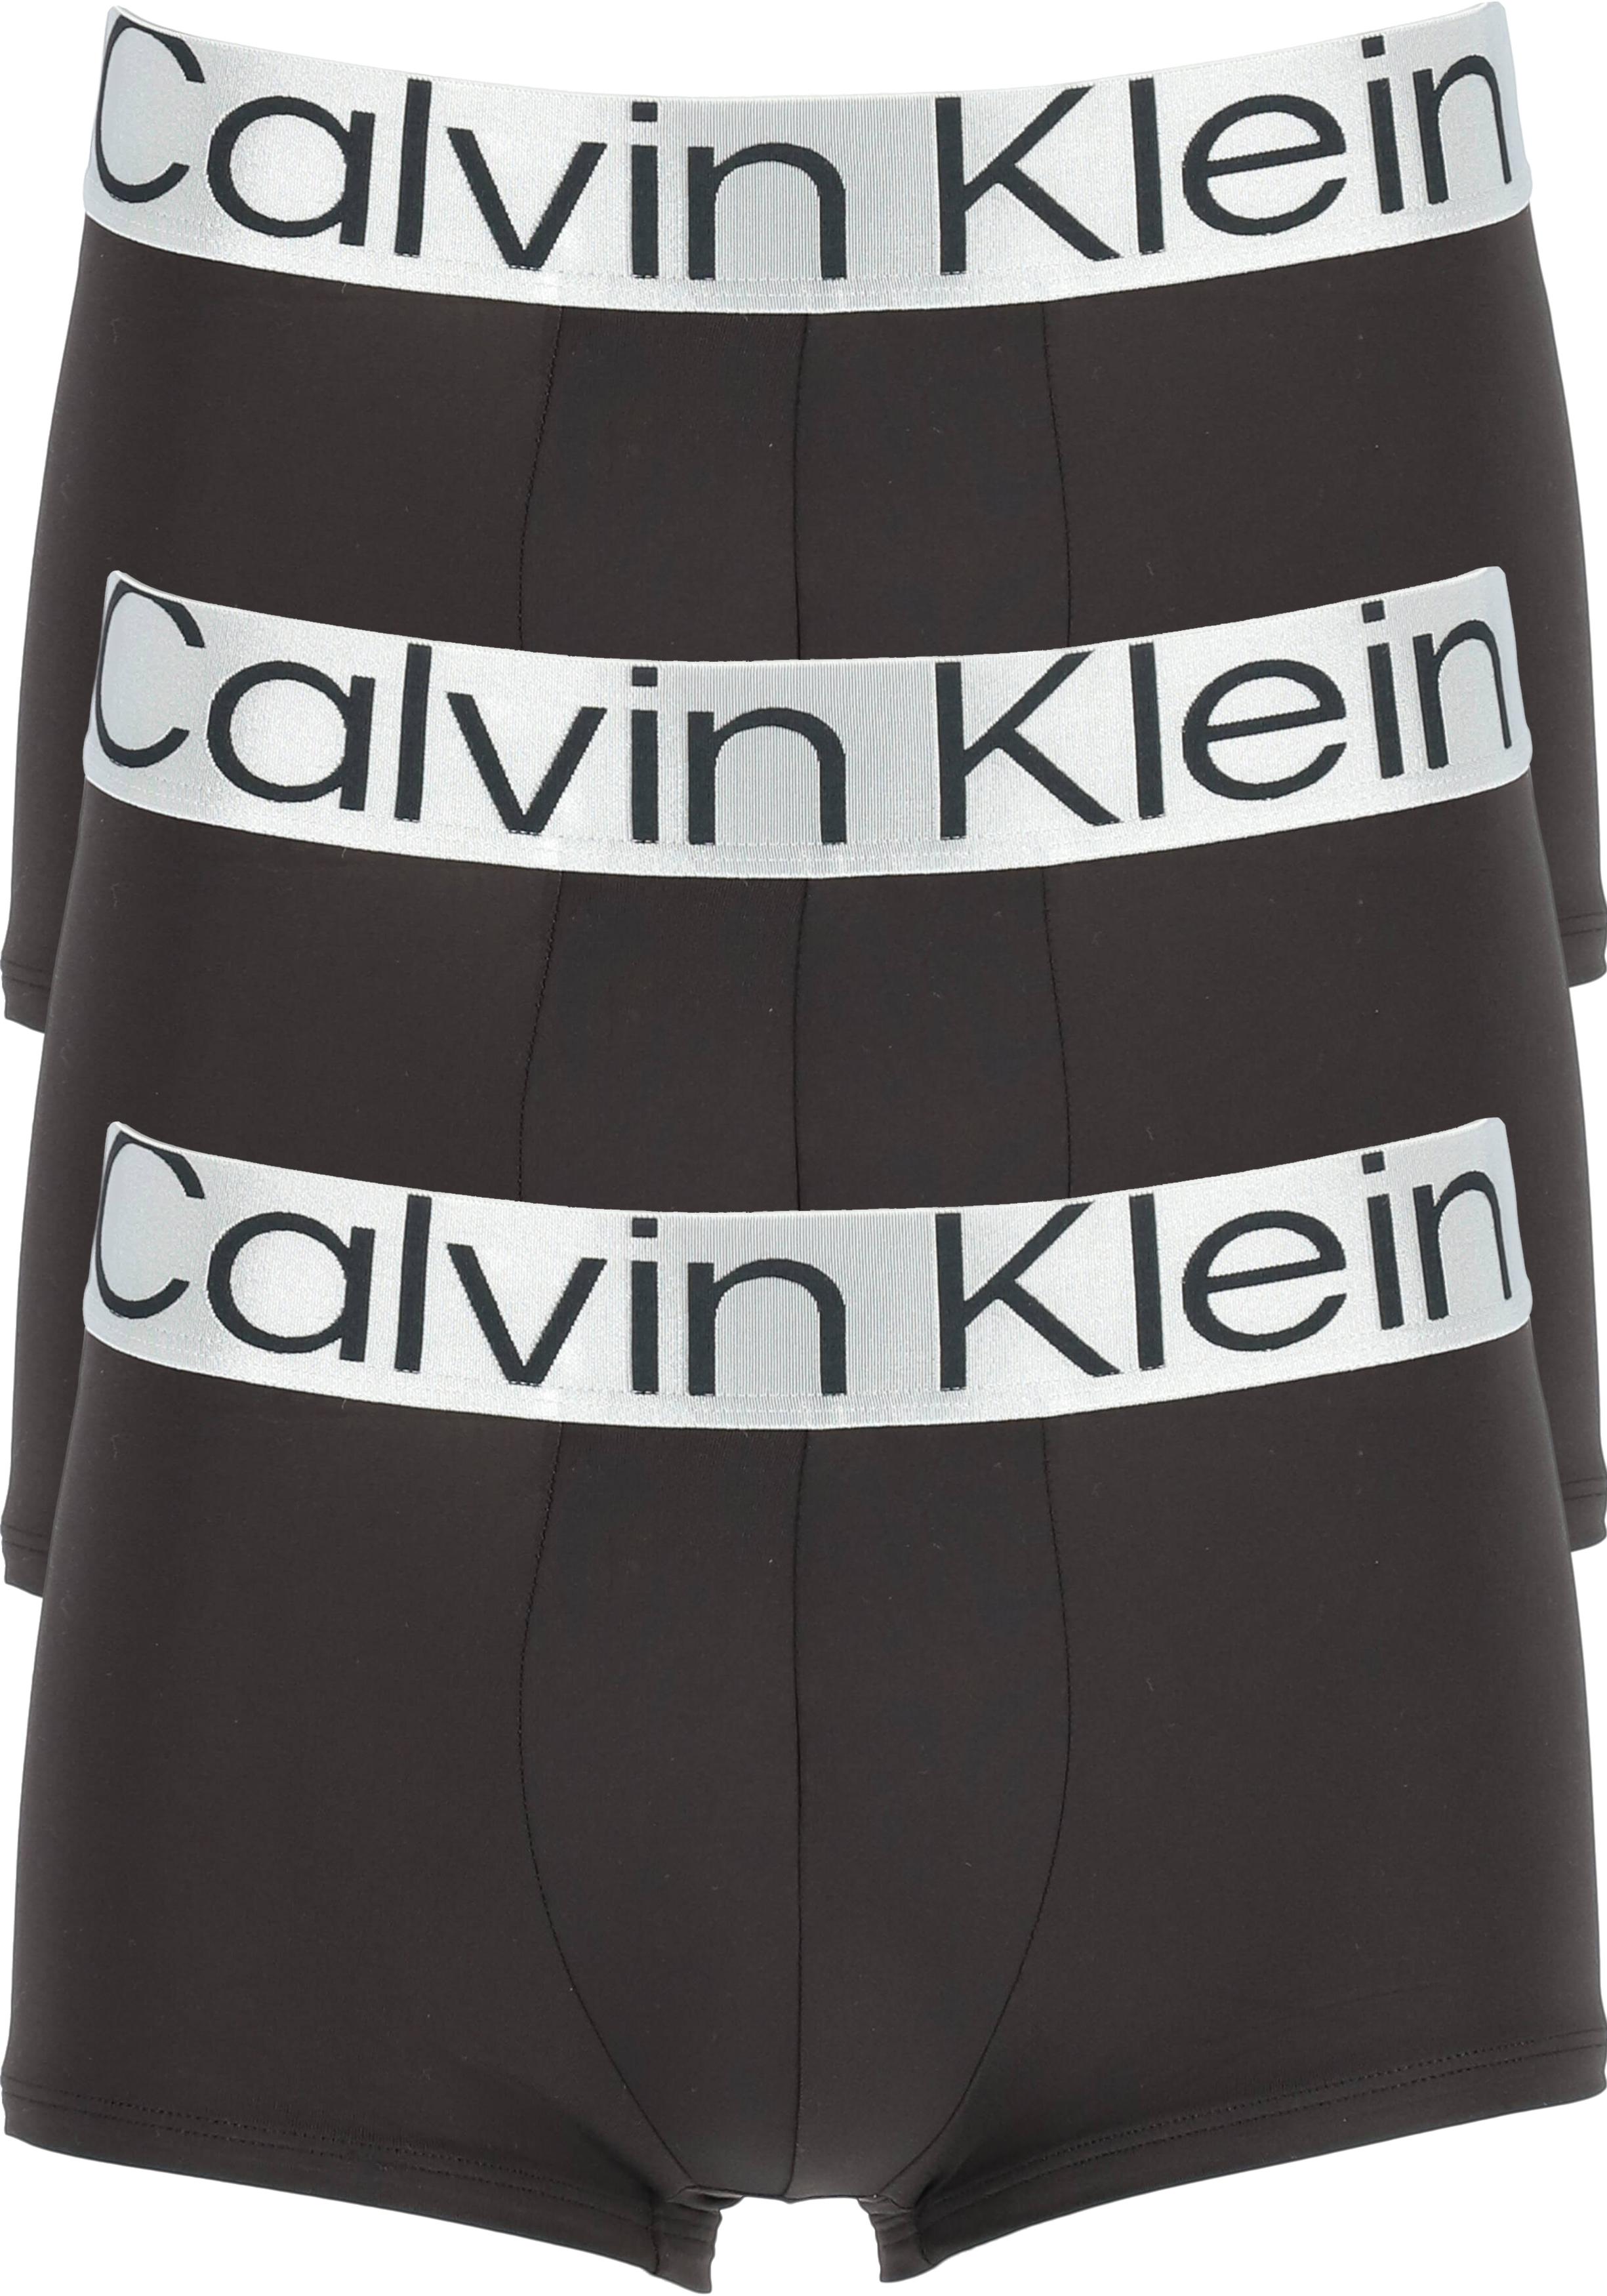 spade Mew Mew Touhou Calvin Klein low rise trunks (3-pack), microfiber lage heren boxers... -  Shop de nieuwste voorjaarsmode